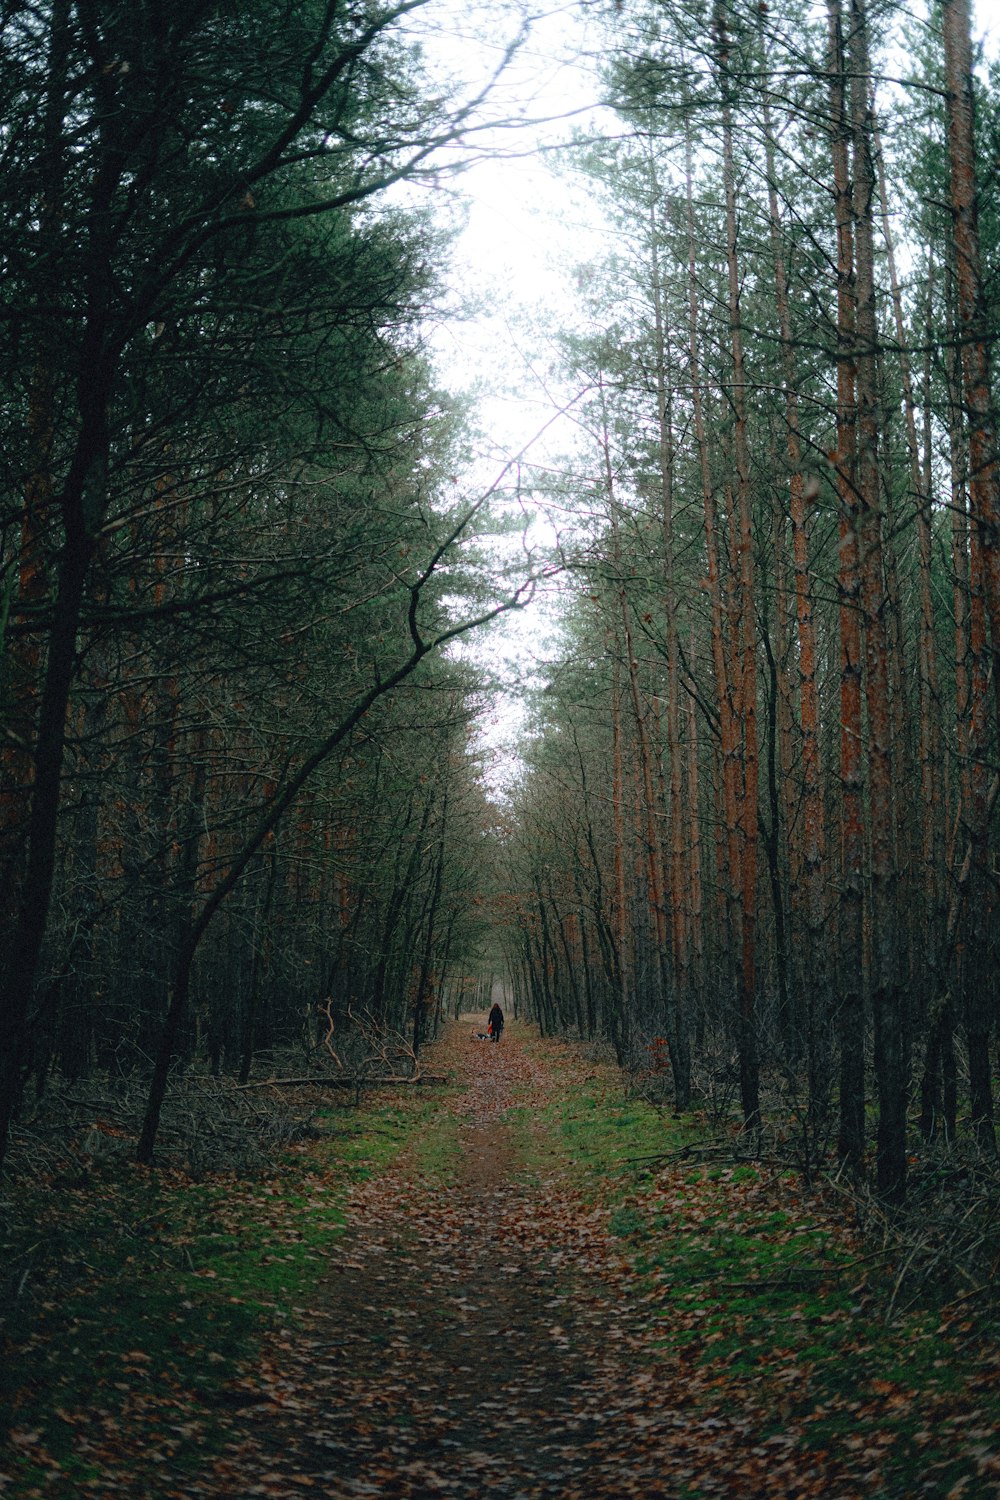 Persona in giacca nera che cammina sul sentiero tra gli alberi durante il giorno